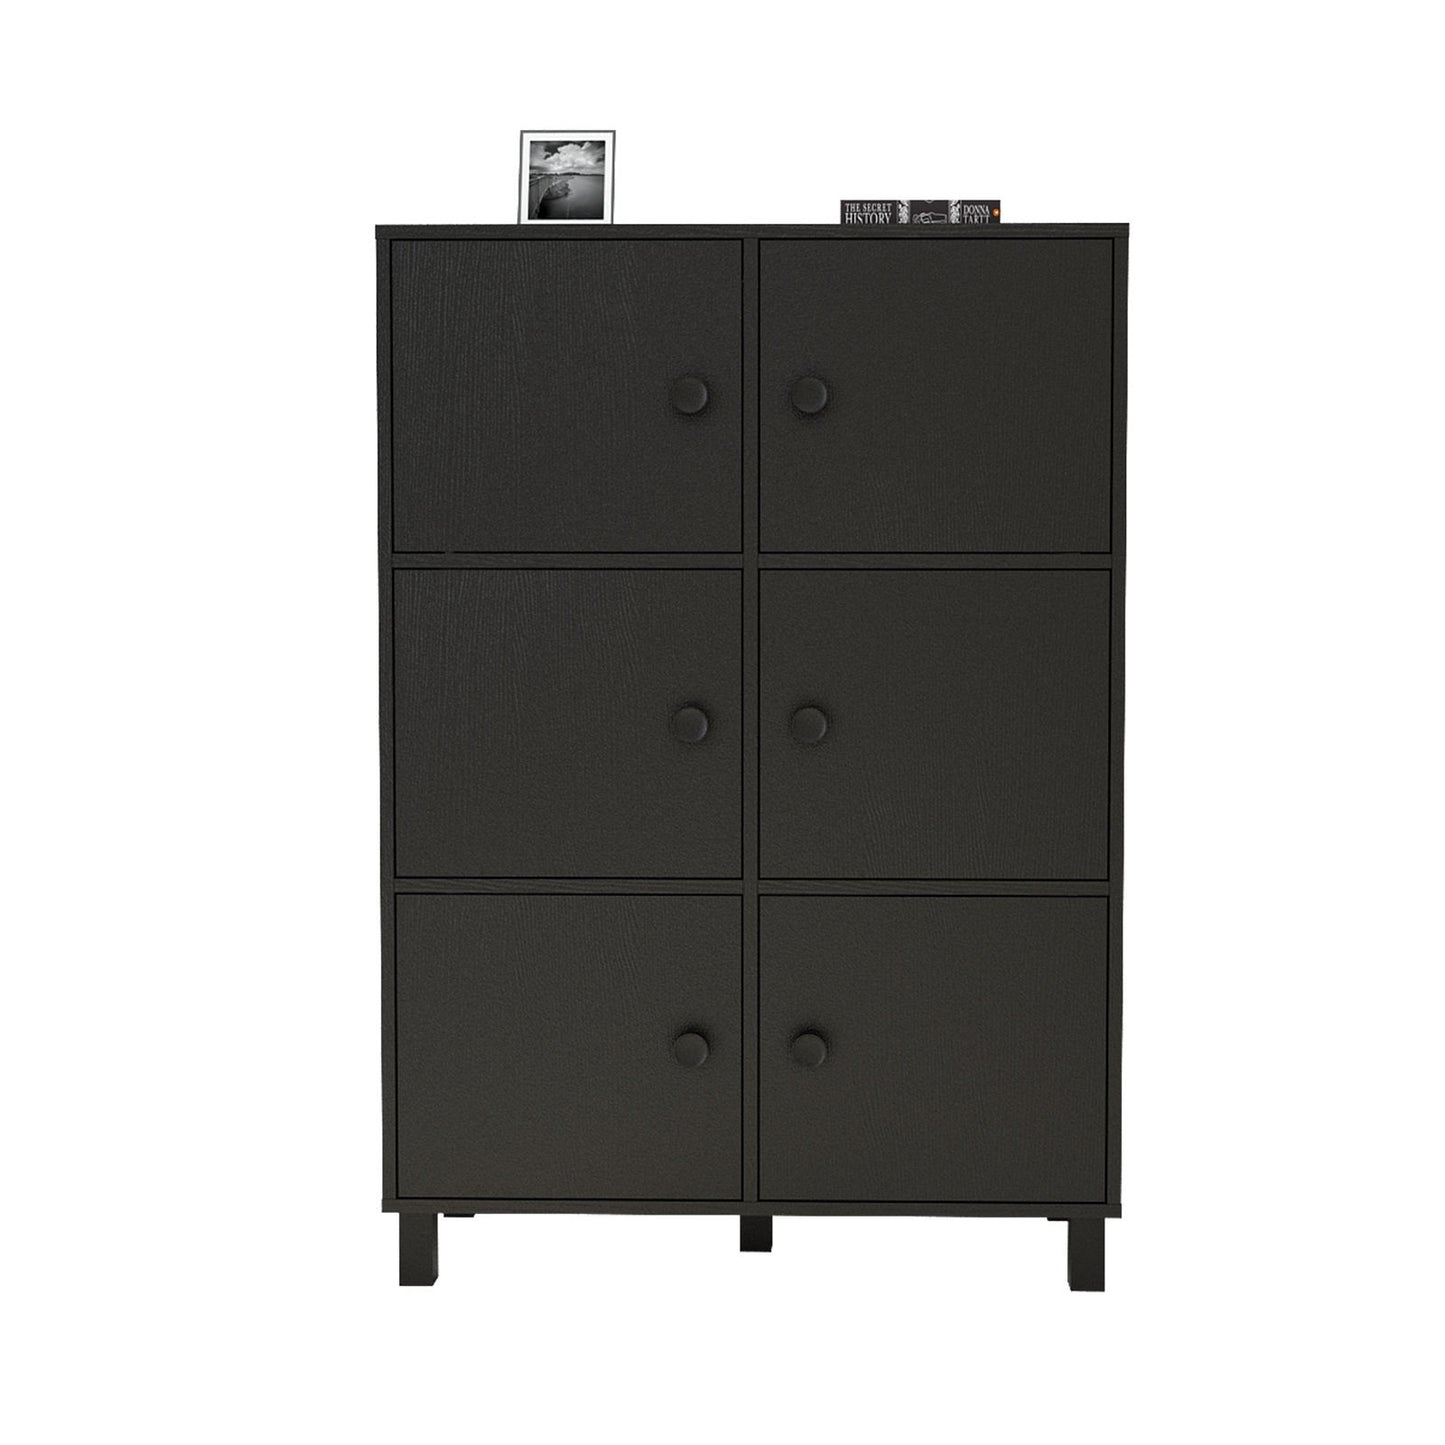 VL48-338 - Multi Purpose Cabinet